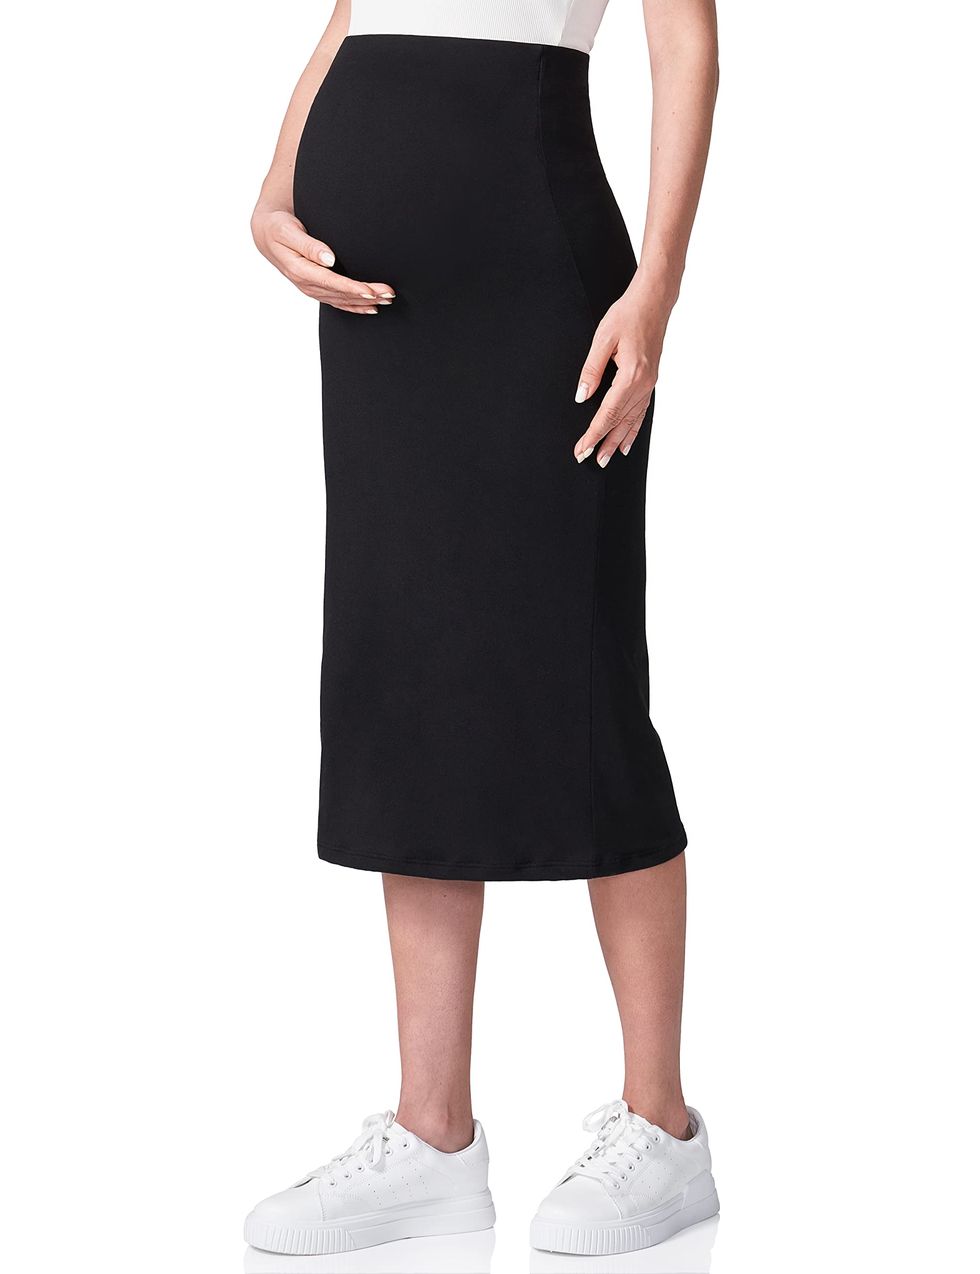 Women's Maternity Skirt 